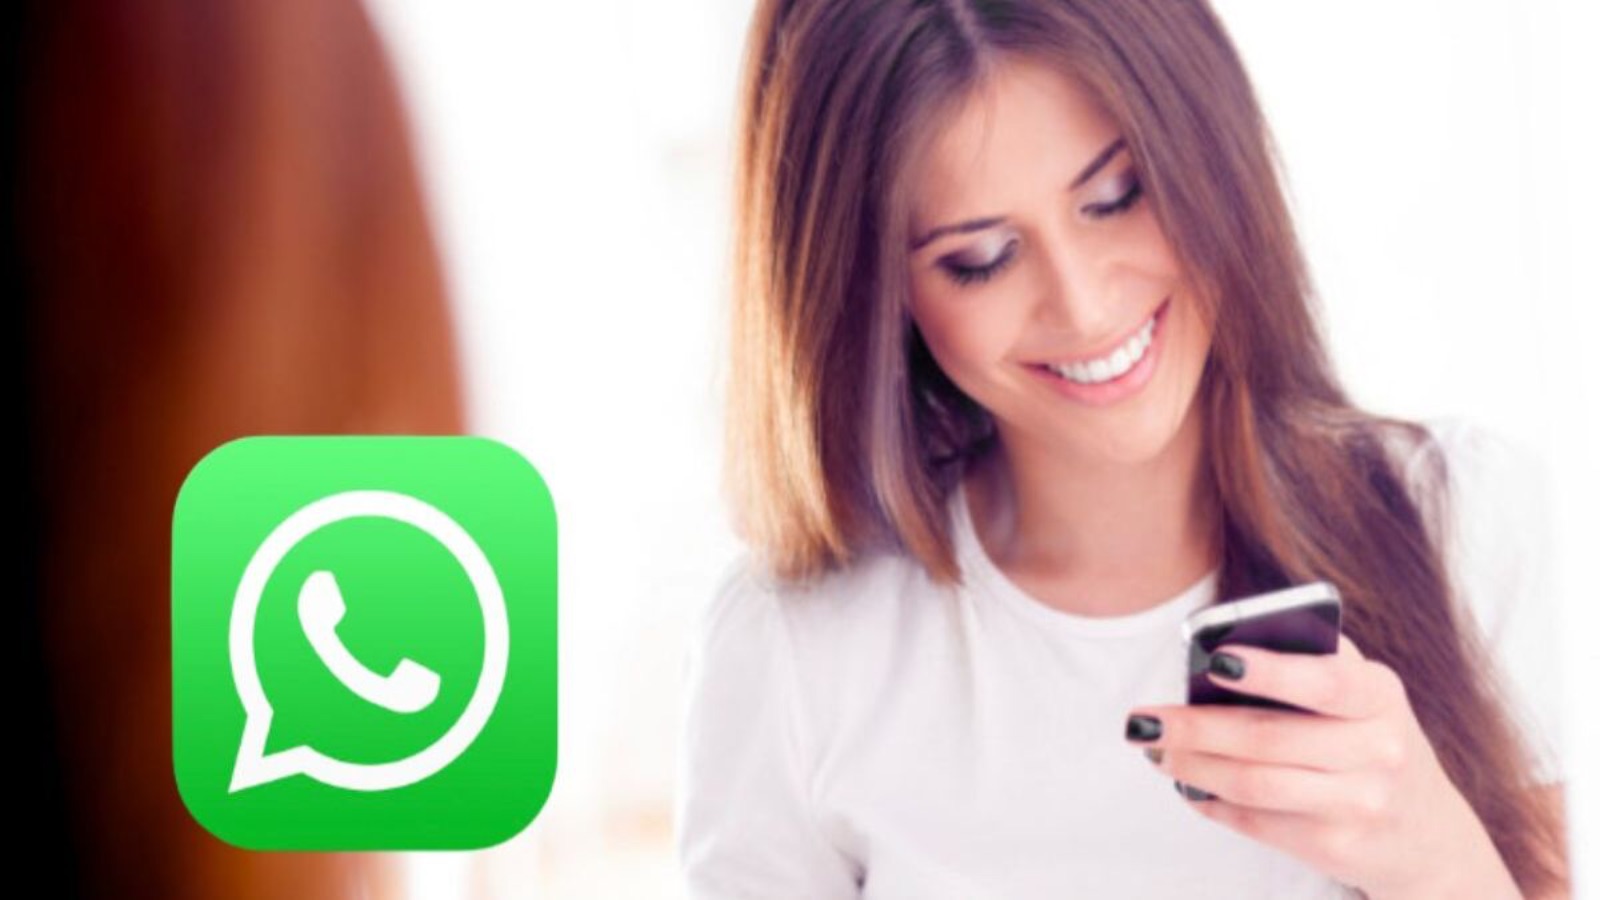 WhatsApp, OTTOBRE inizia con tre funzioni INCREDIBILI